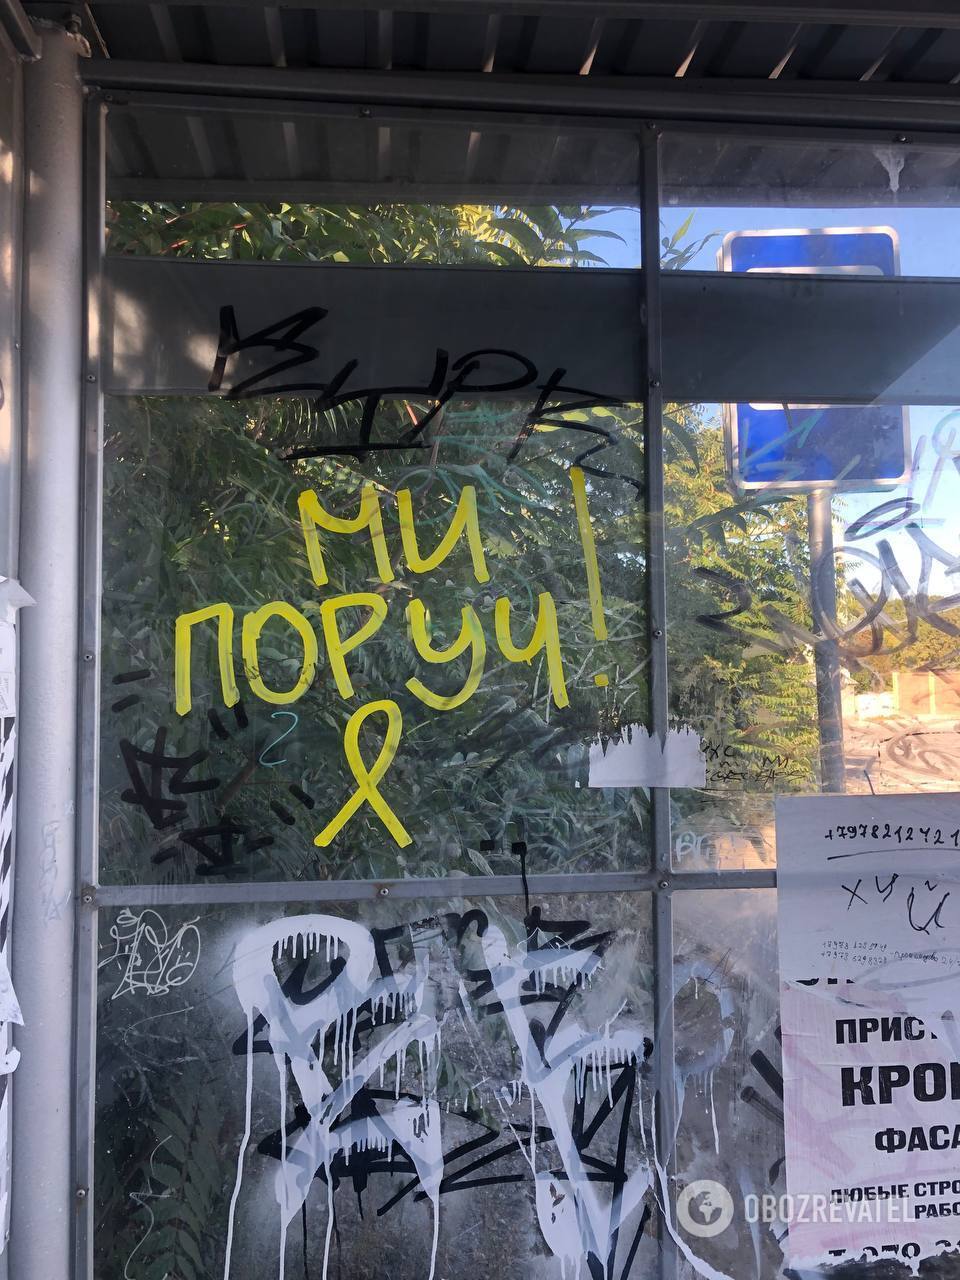 В Симферополе проукраинские активисты развернули активную работу: в городе появились патриотические символы. Фото и видео